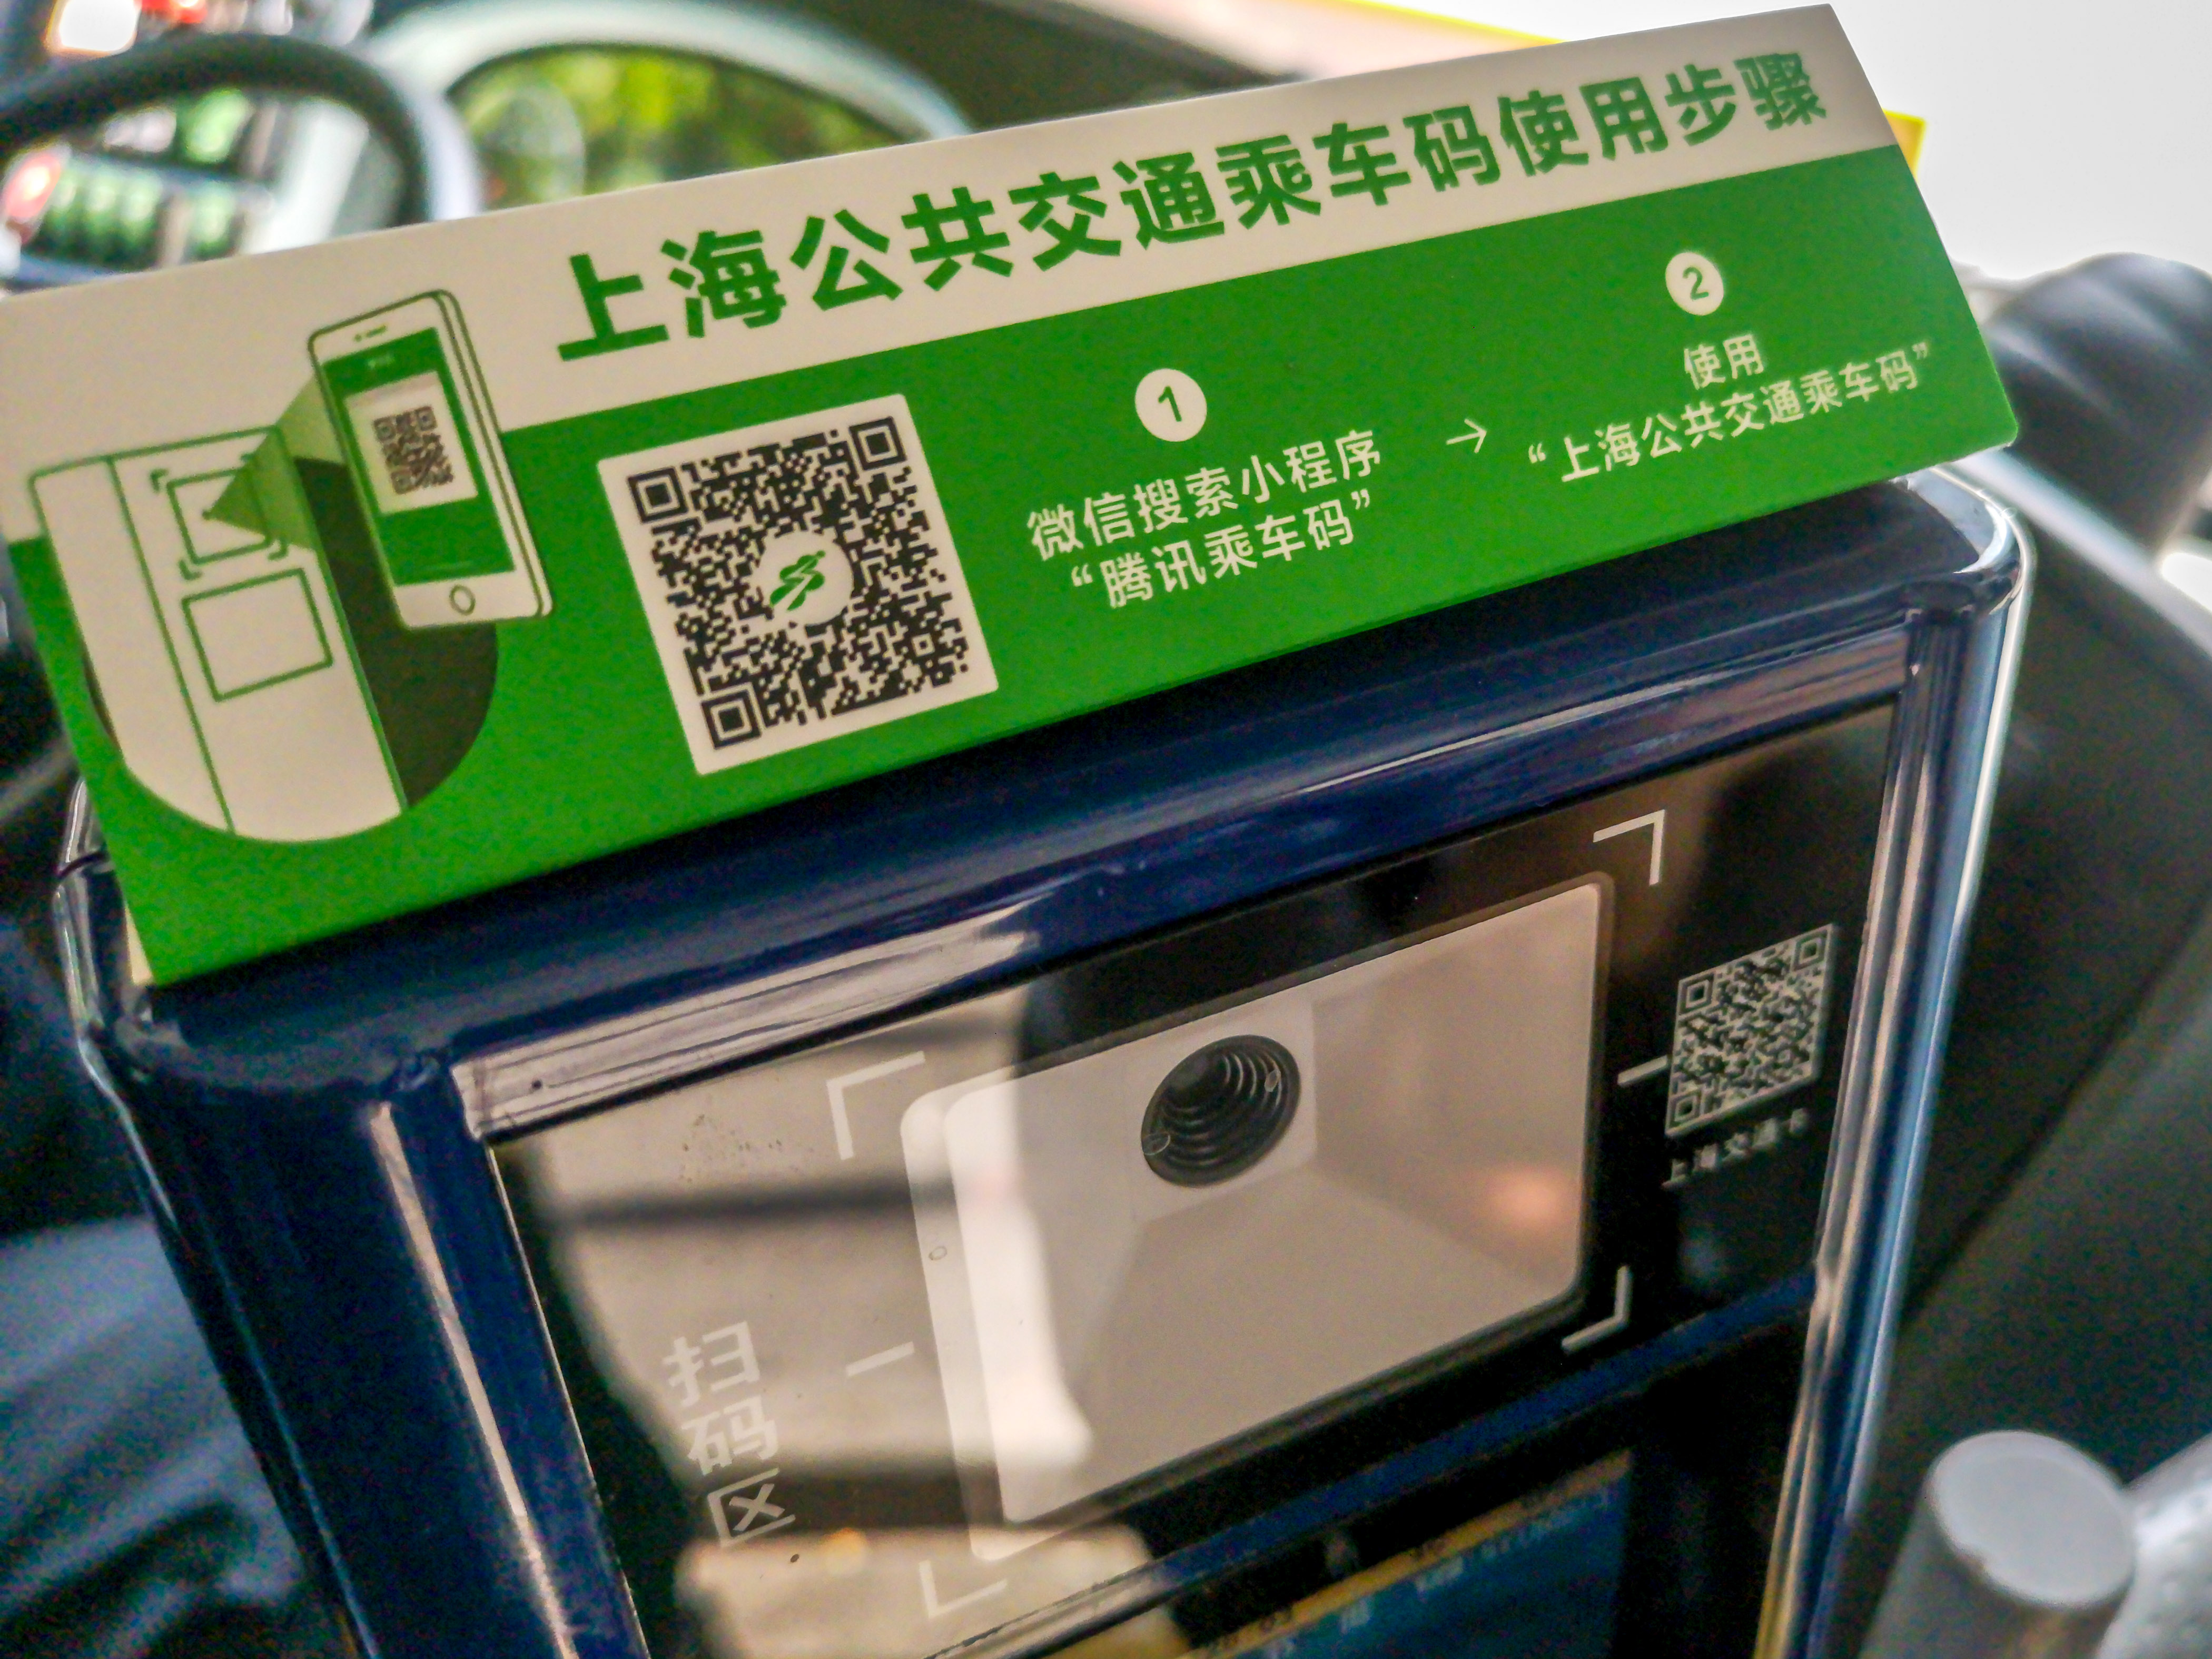 WeChat-jegyautomata egy sanghaji autóbuszon. Egyelőre 2000 buszt szereltek fel vele, október végére az összes sanghaji buszon így lehet majd jegyet venni.